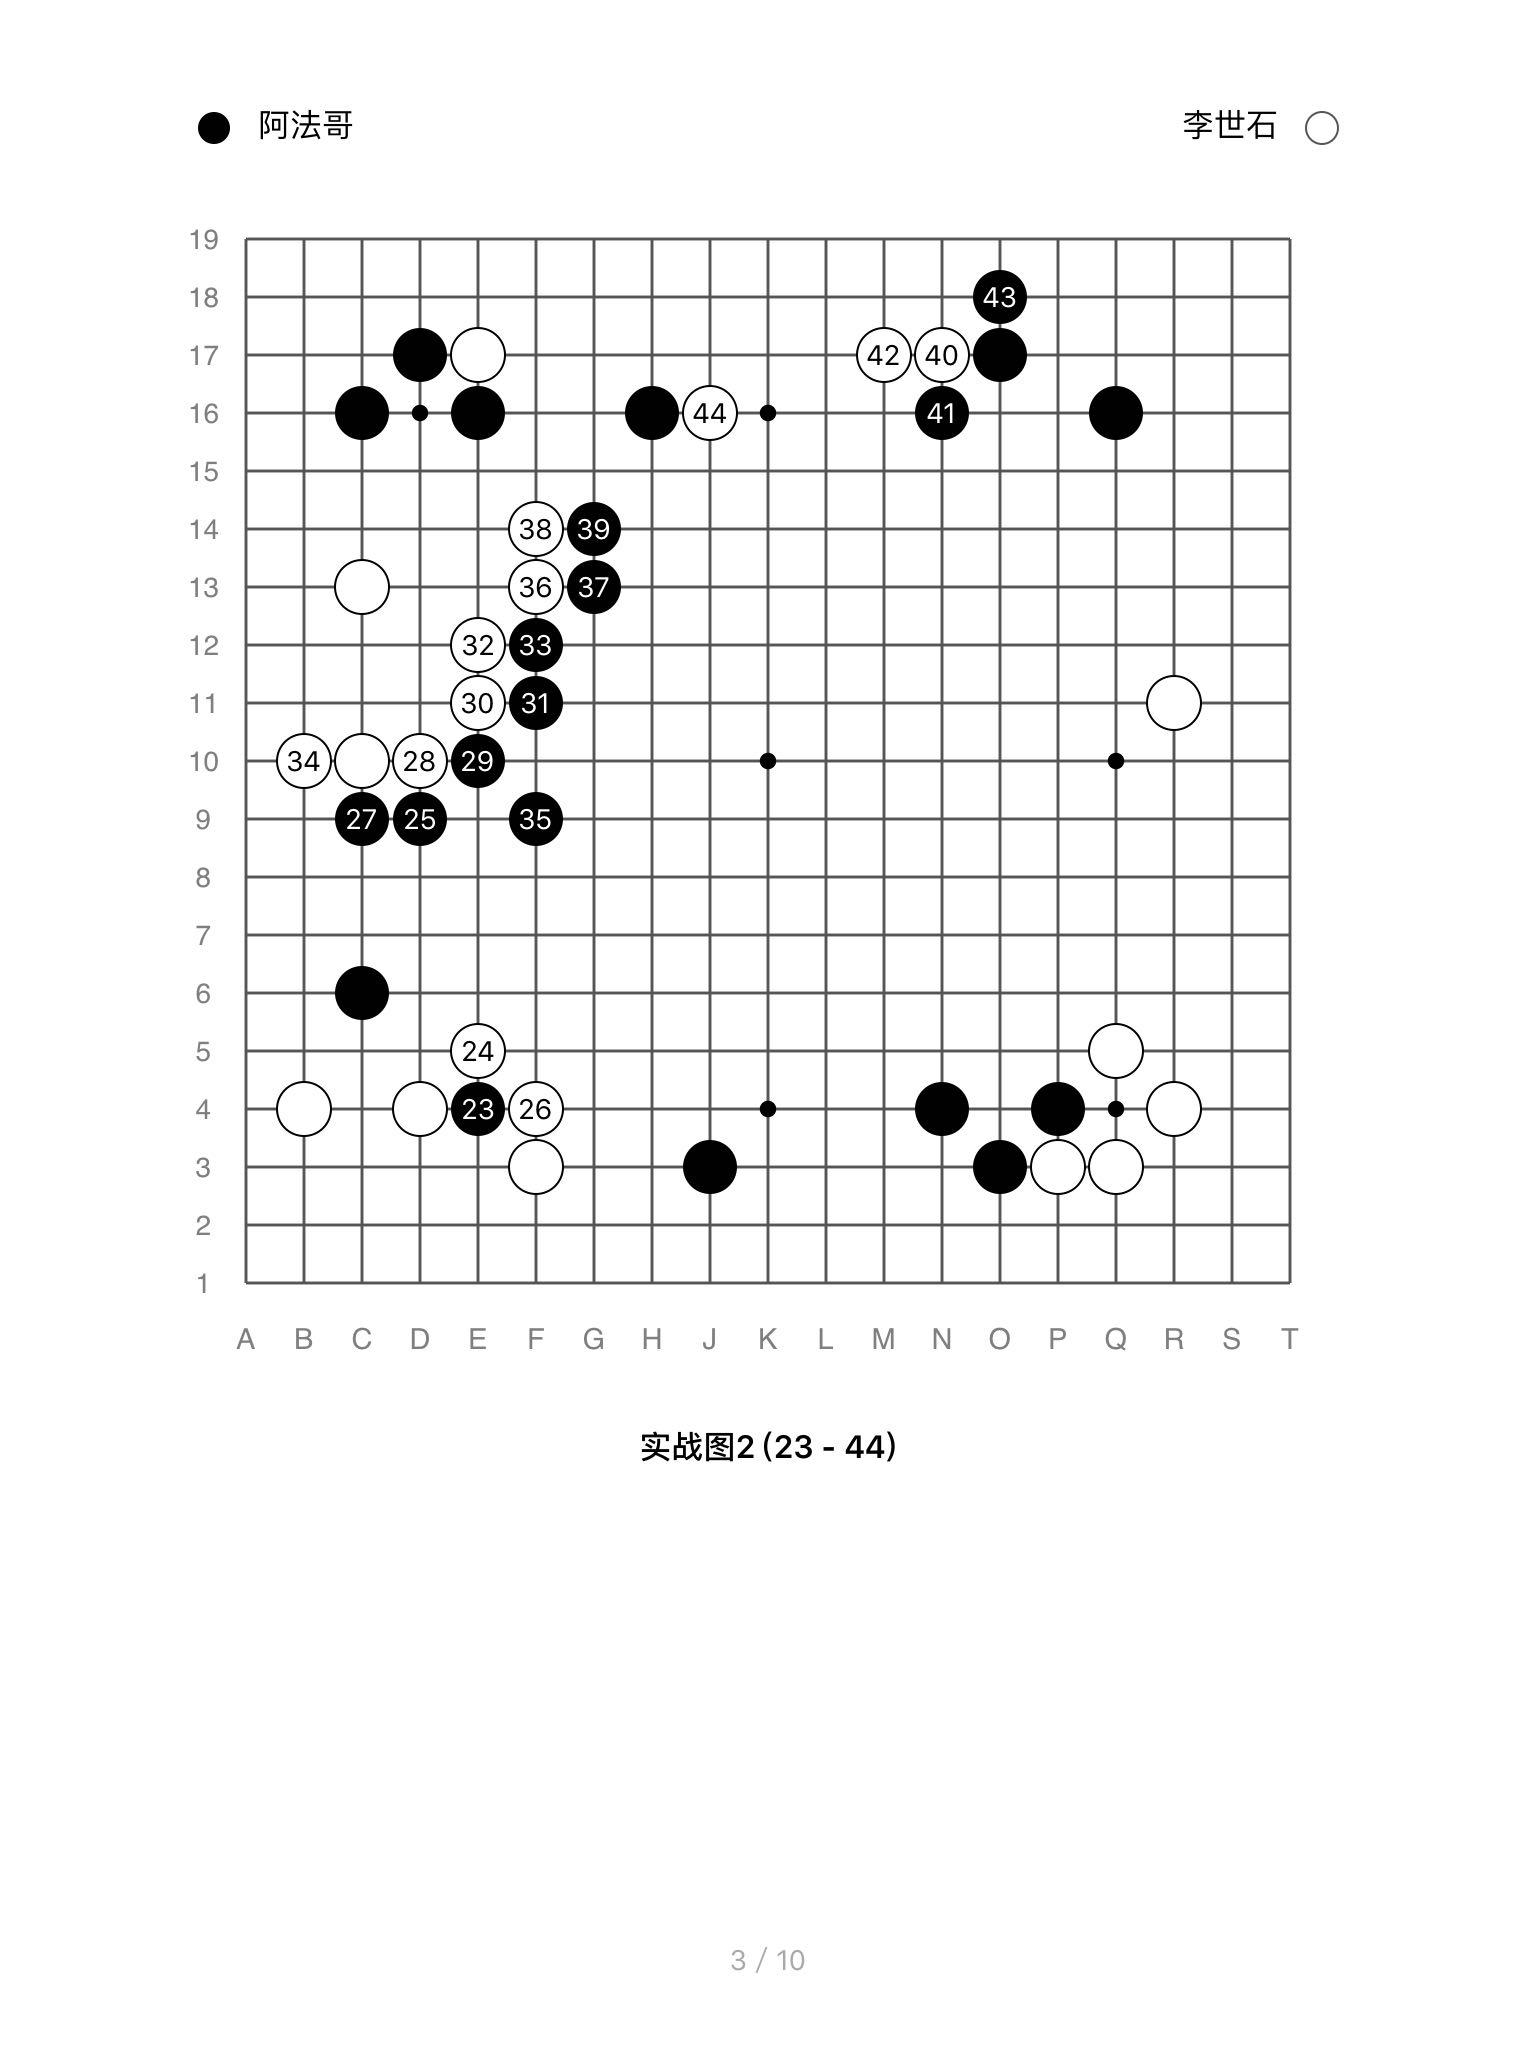 如何看待人机大战第四局李世石战胜AlphaGo?